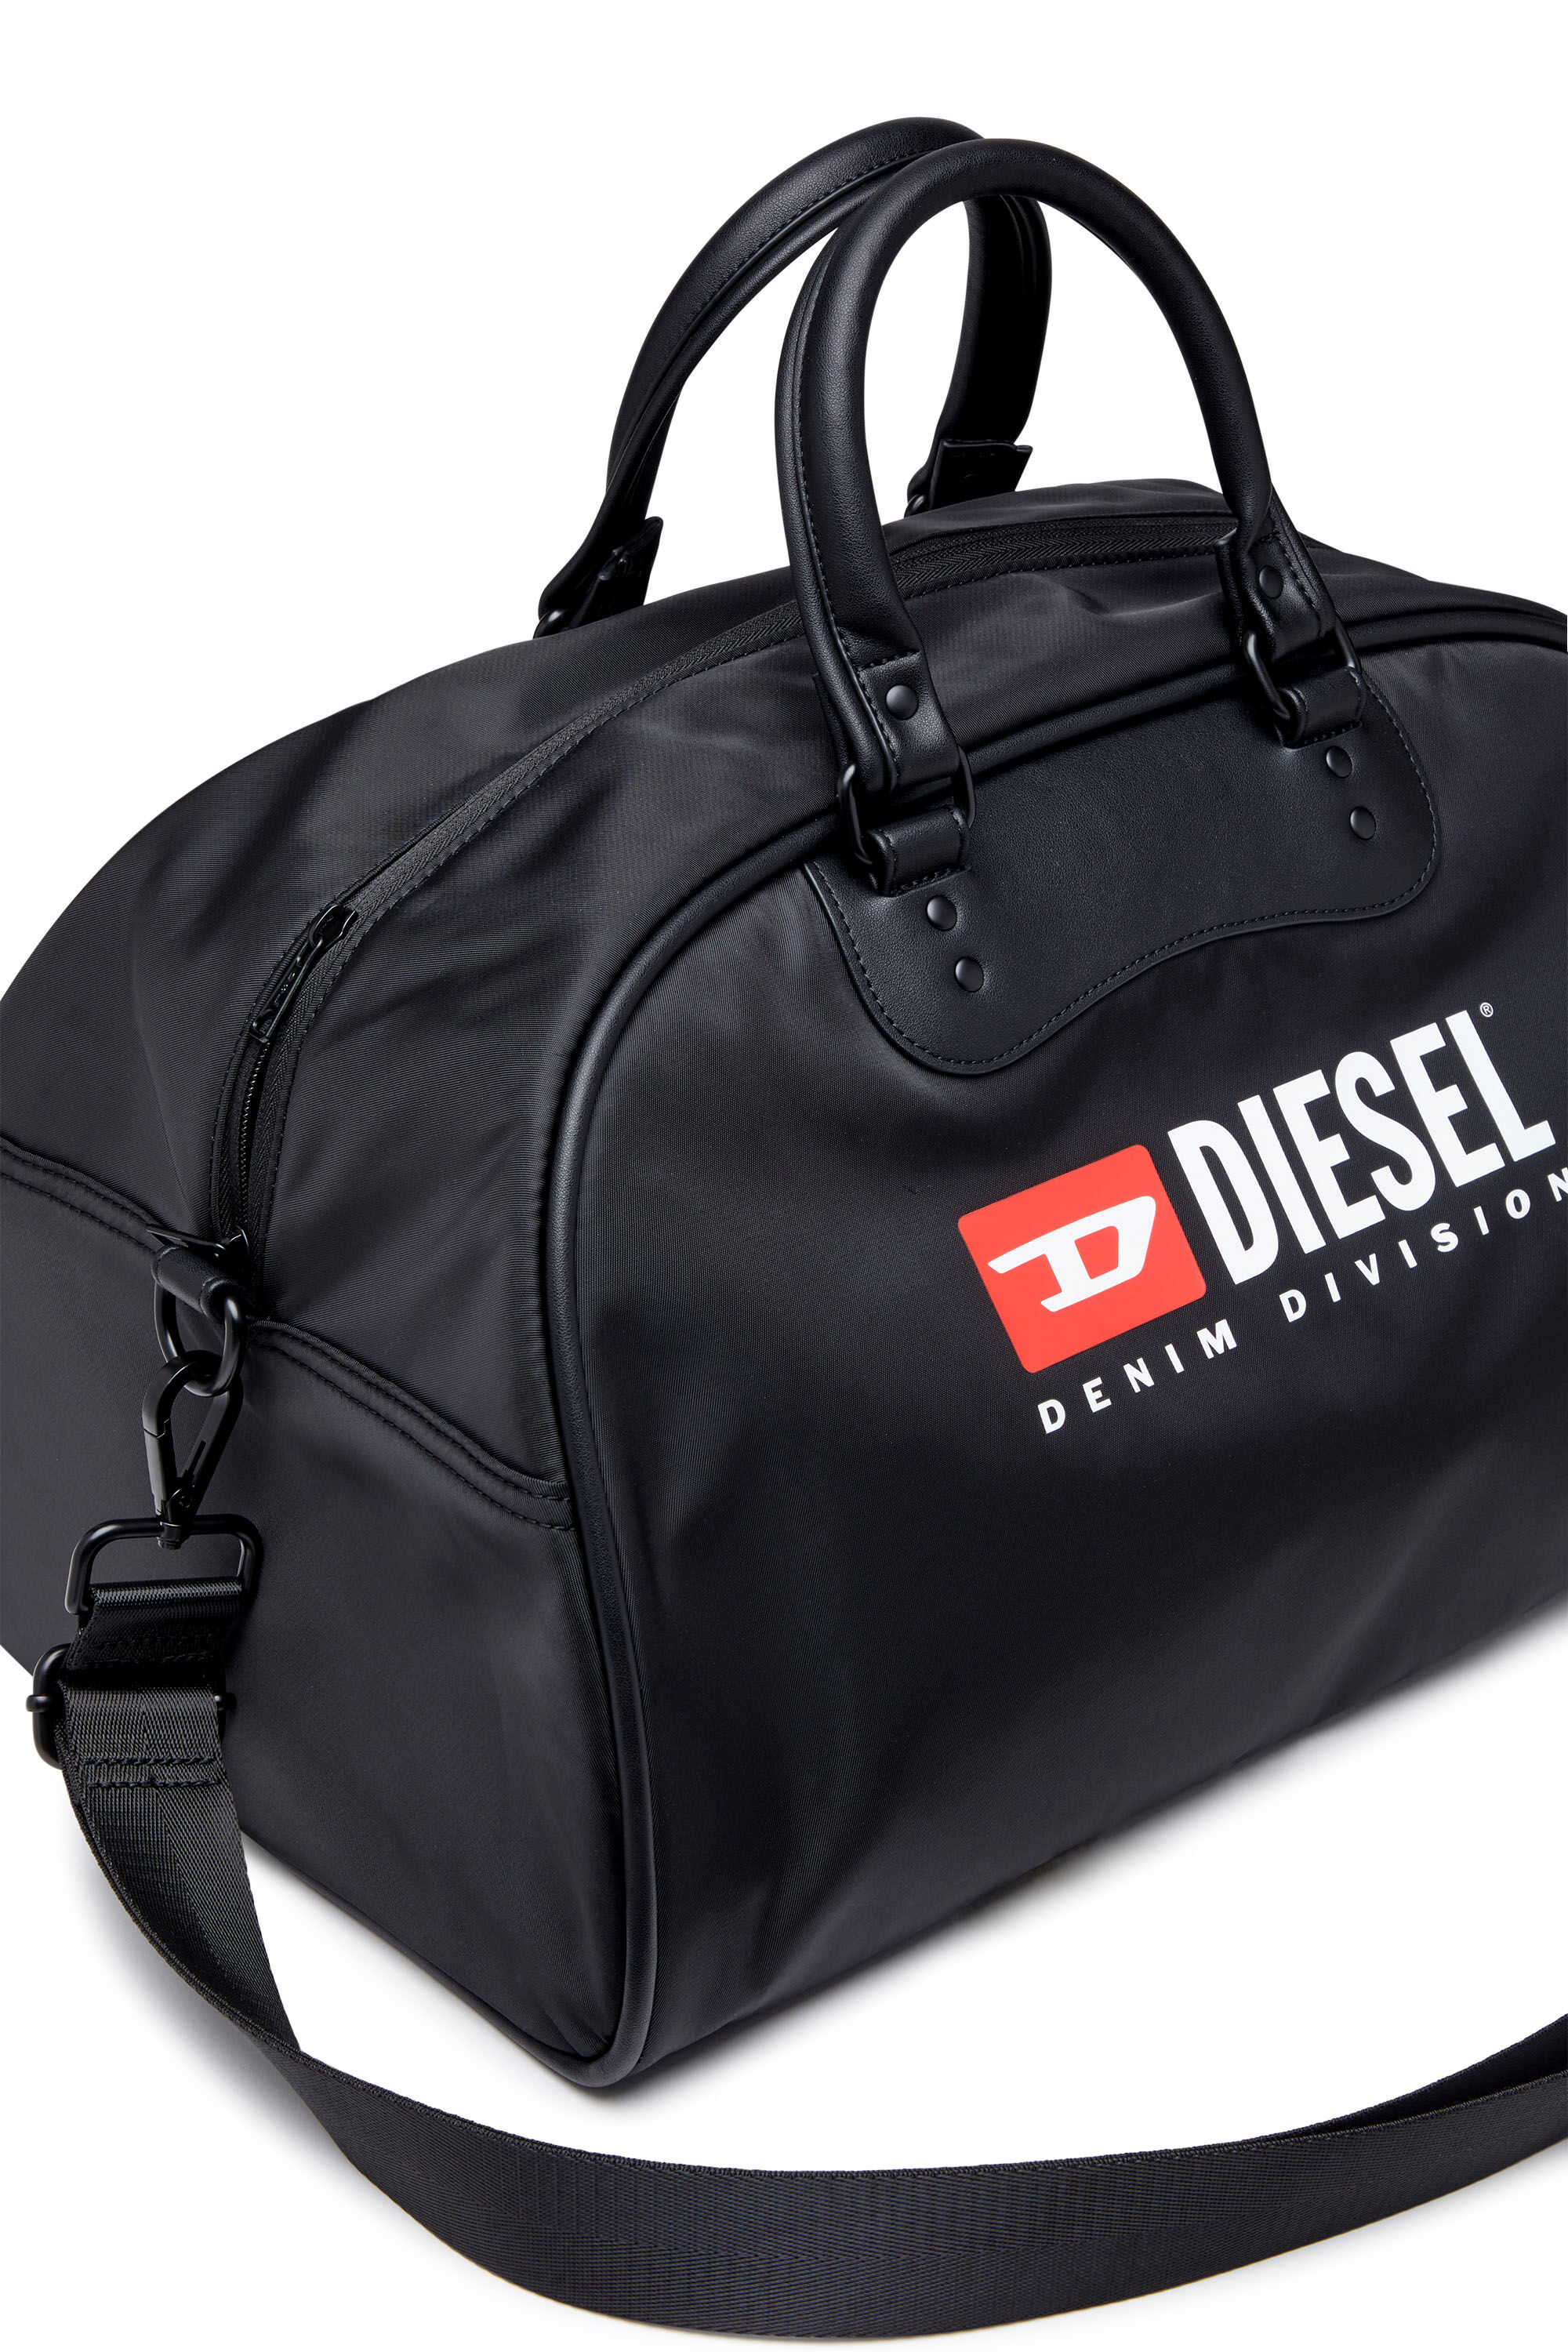 Diesel - RINKE DUFFLE, Black - Image 5